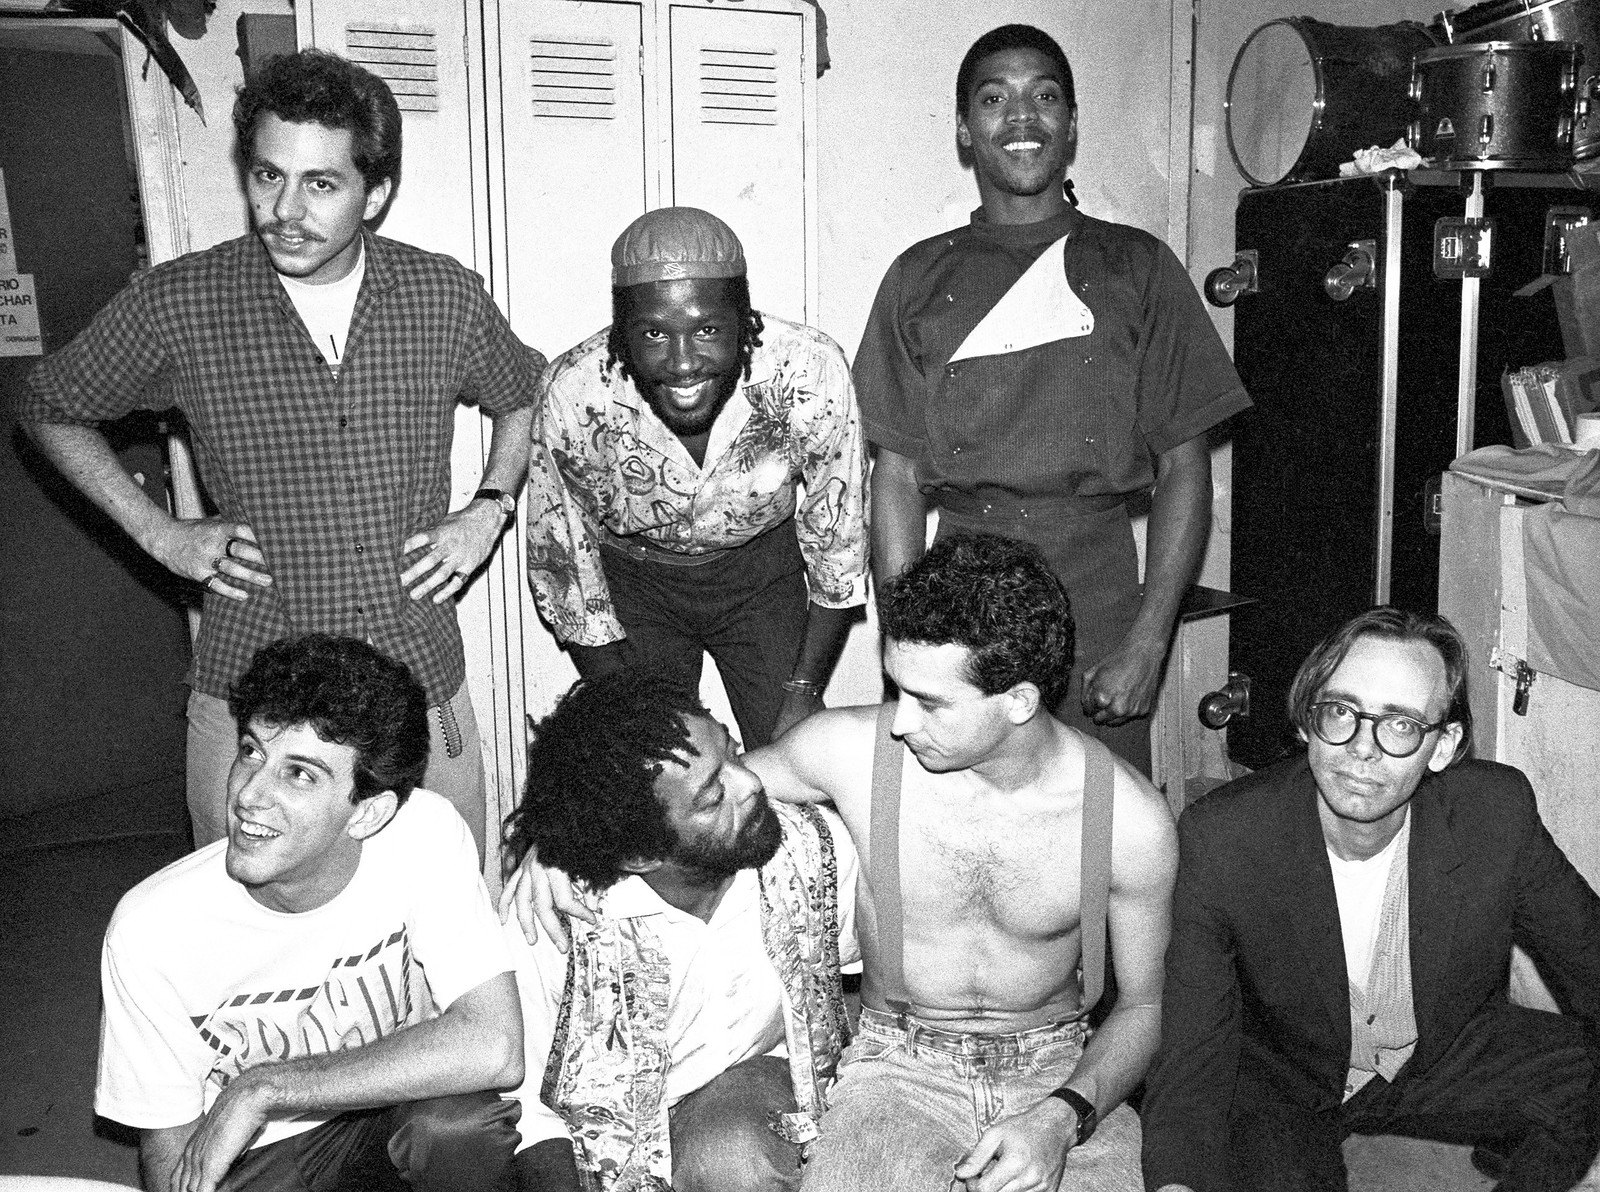 Os Paralamas do Sucesso em 1986, em Nova York, na boate Sounds of Brazil, com David Rudder, Femi Kuti, Naná Vasconcelos e Arto Lindsay — Foto: Divulgação/Maurício Valladares